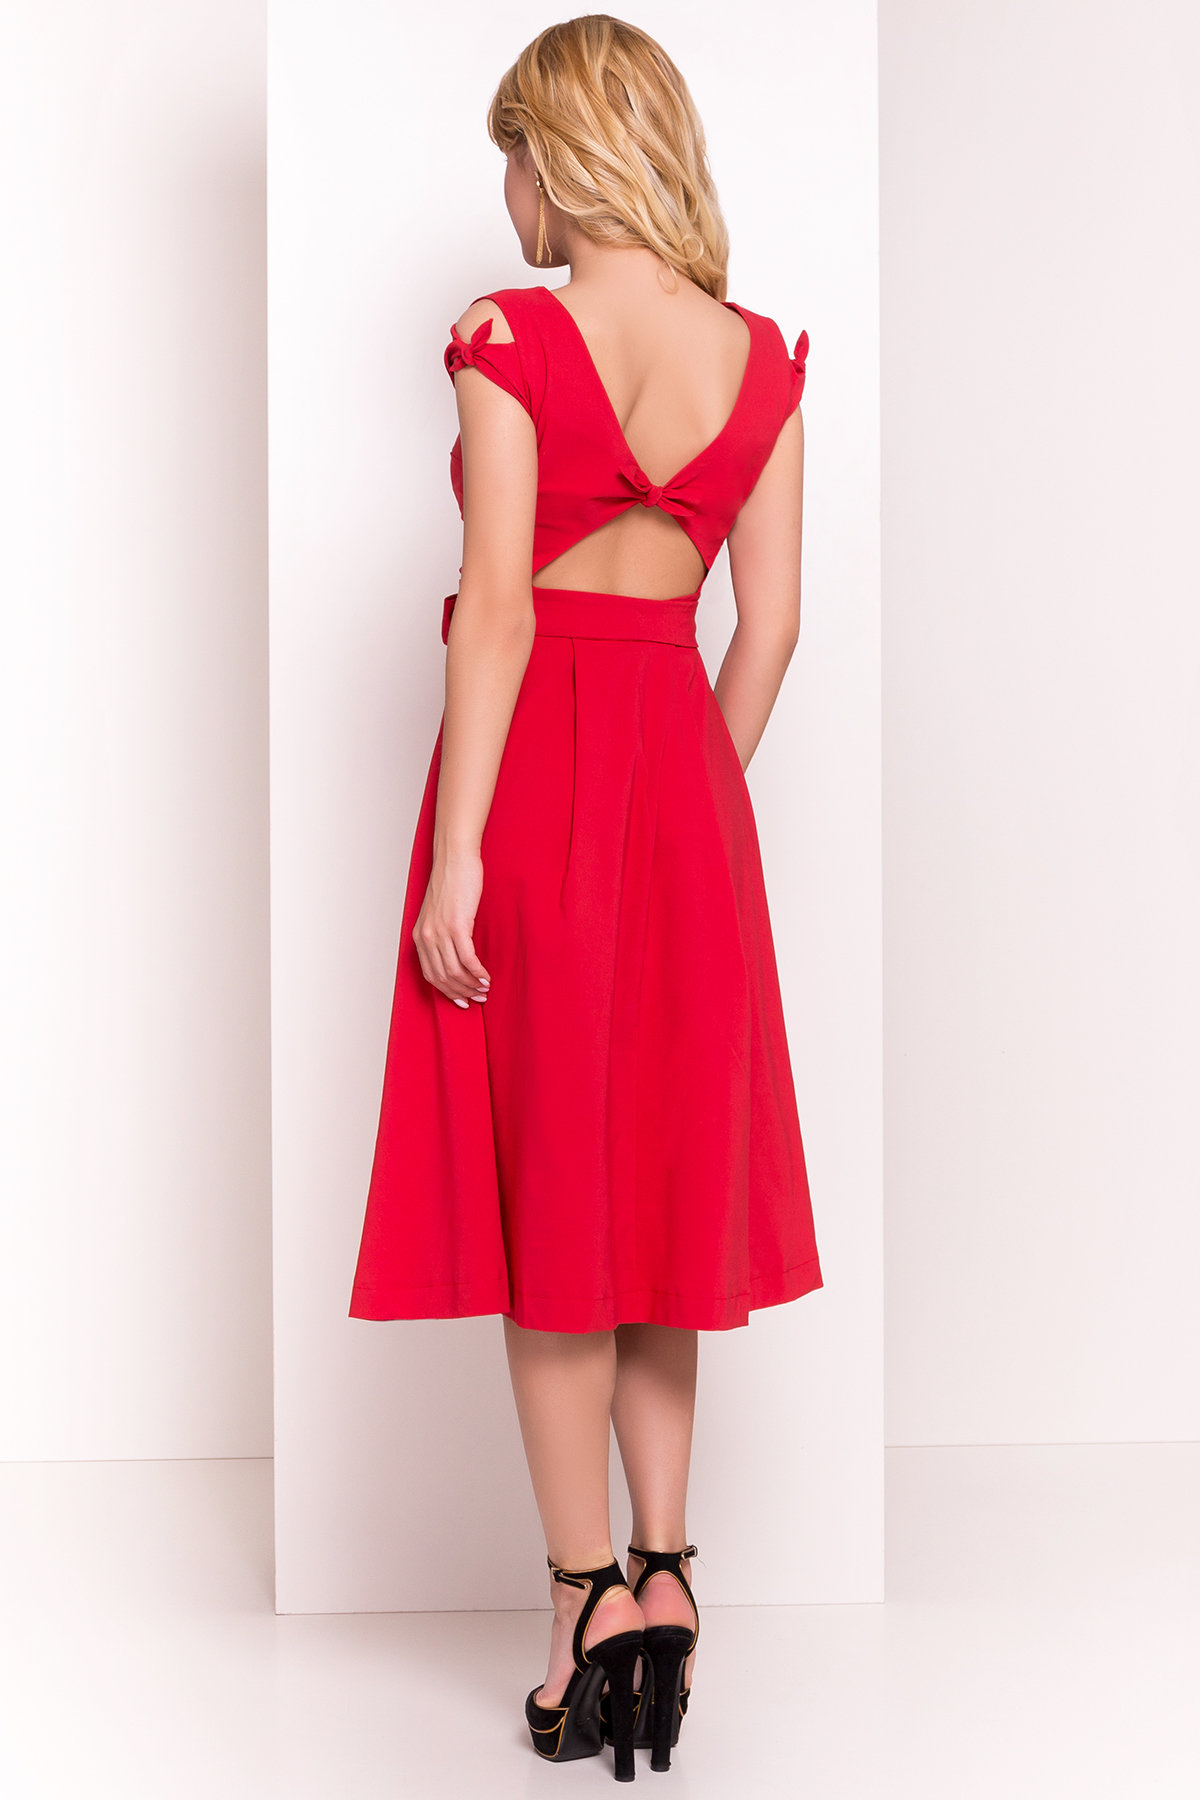 Платье Жадор 5125 АРТ. 35980 Цвет: Красный - фото 3, интернет магазин tm-modus.ru